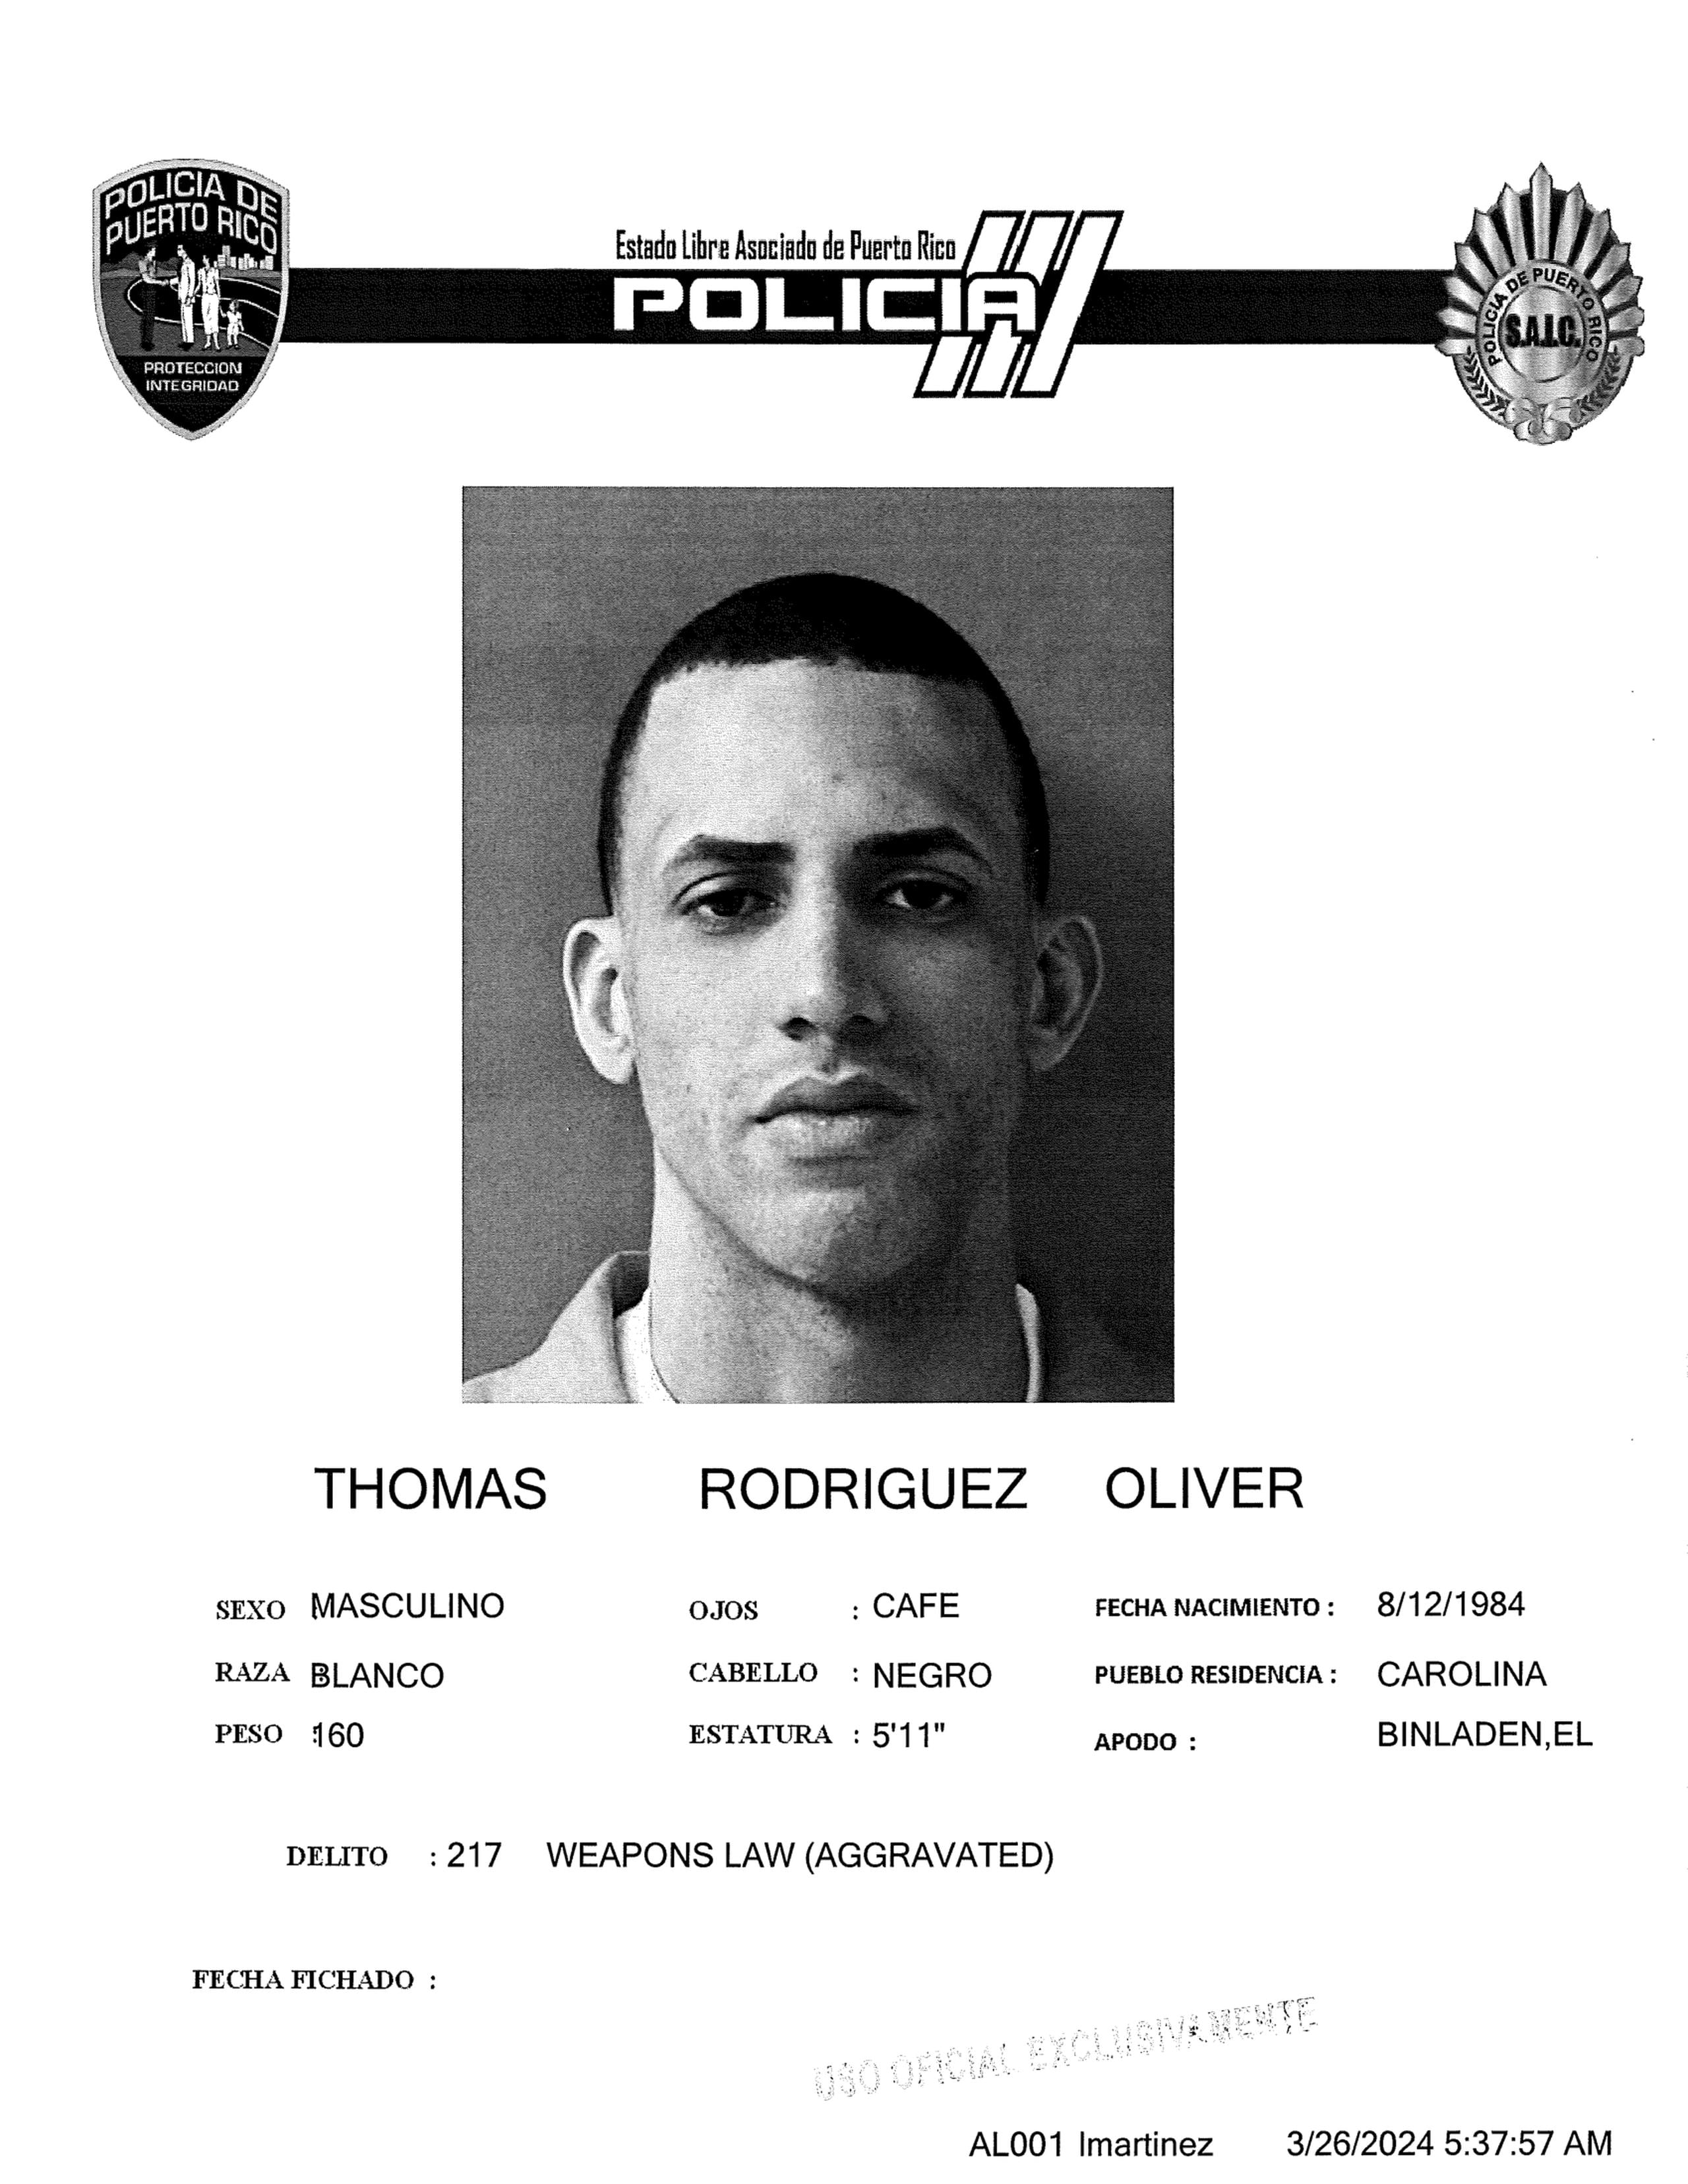 Un confinado apodado “Bin Laden” fue hallado muerto en la cárcel Las Cucharas, en Ponce, durante la tarde del lunes, 25 de marzo de 2024, informó esta mañana el Negociado de la Policía.